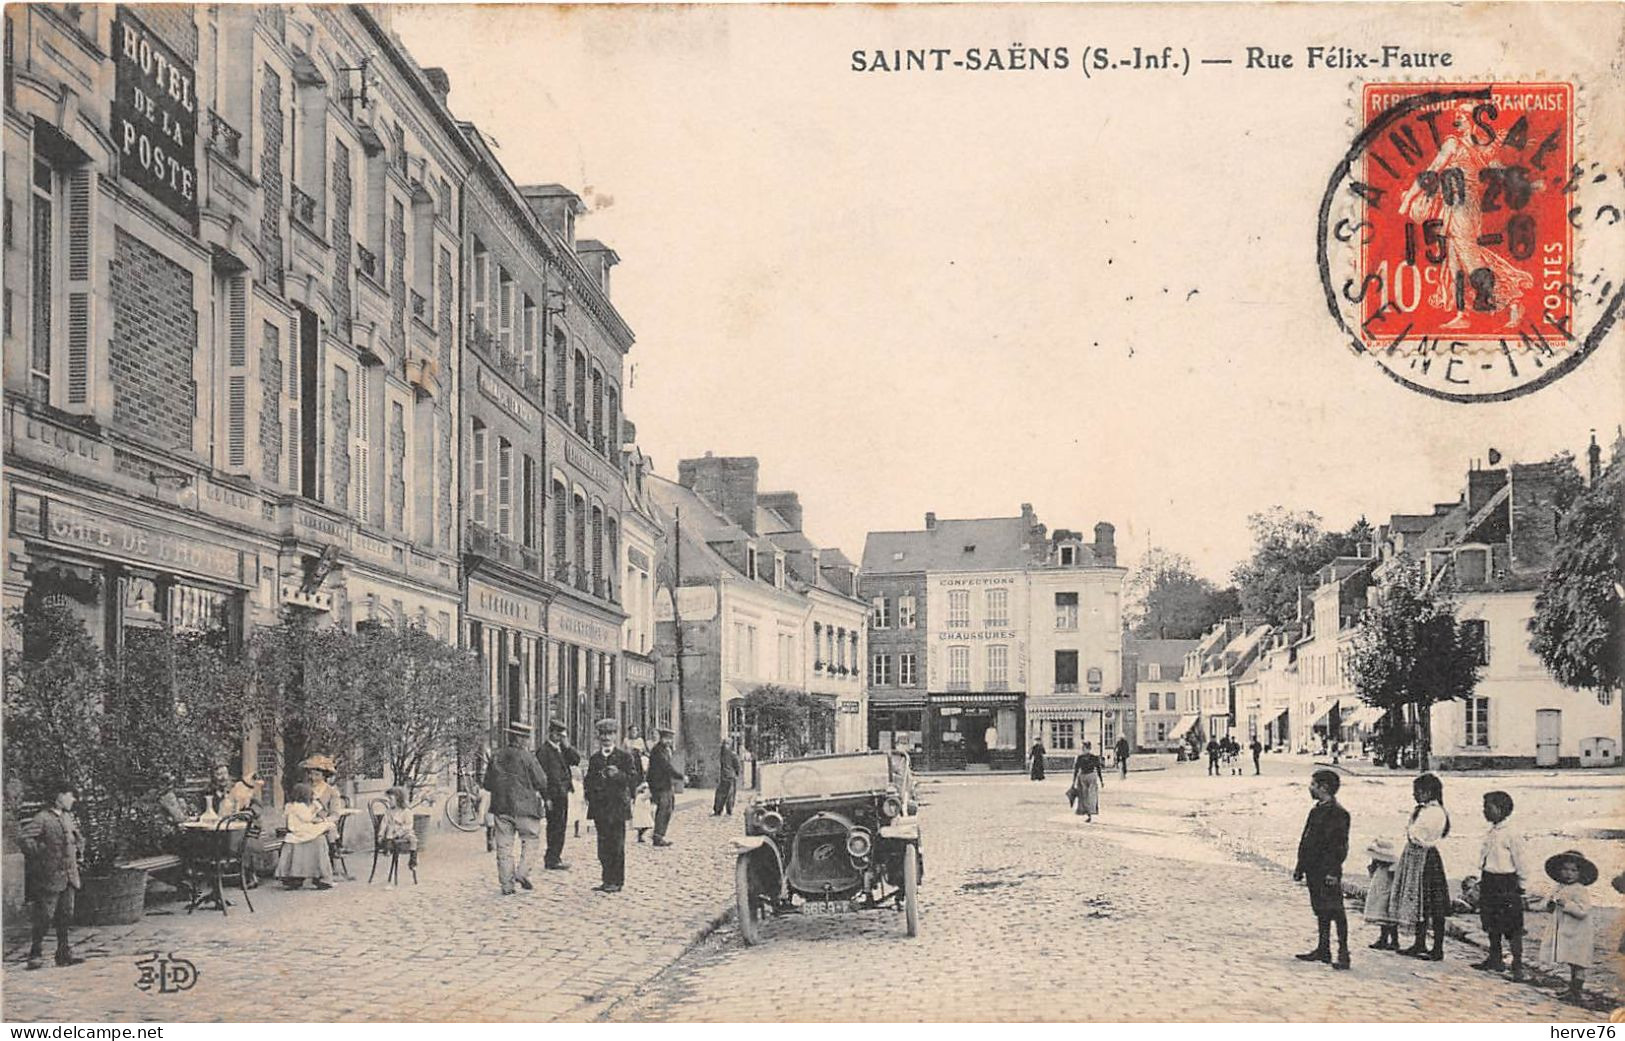 SAINS-SAENS - Rue Félix Faure - Café - Automobile - 1912 - Saint Saens